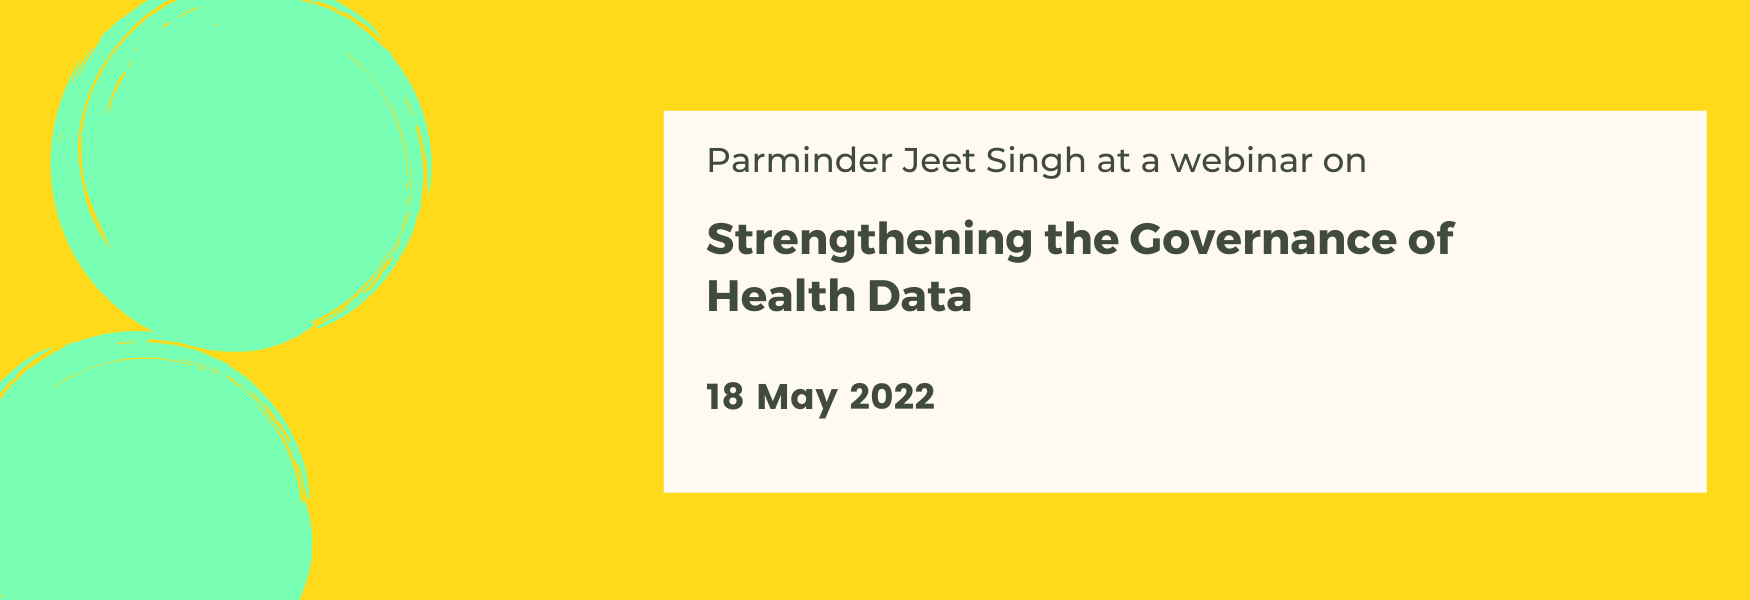 Webinar on Strengthening the Governance of Health Data